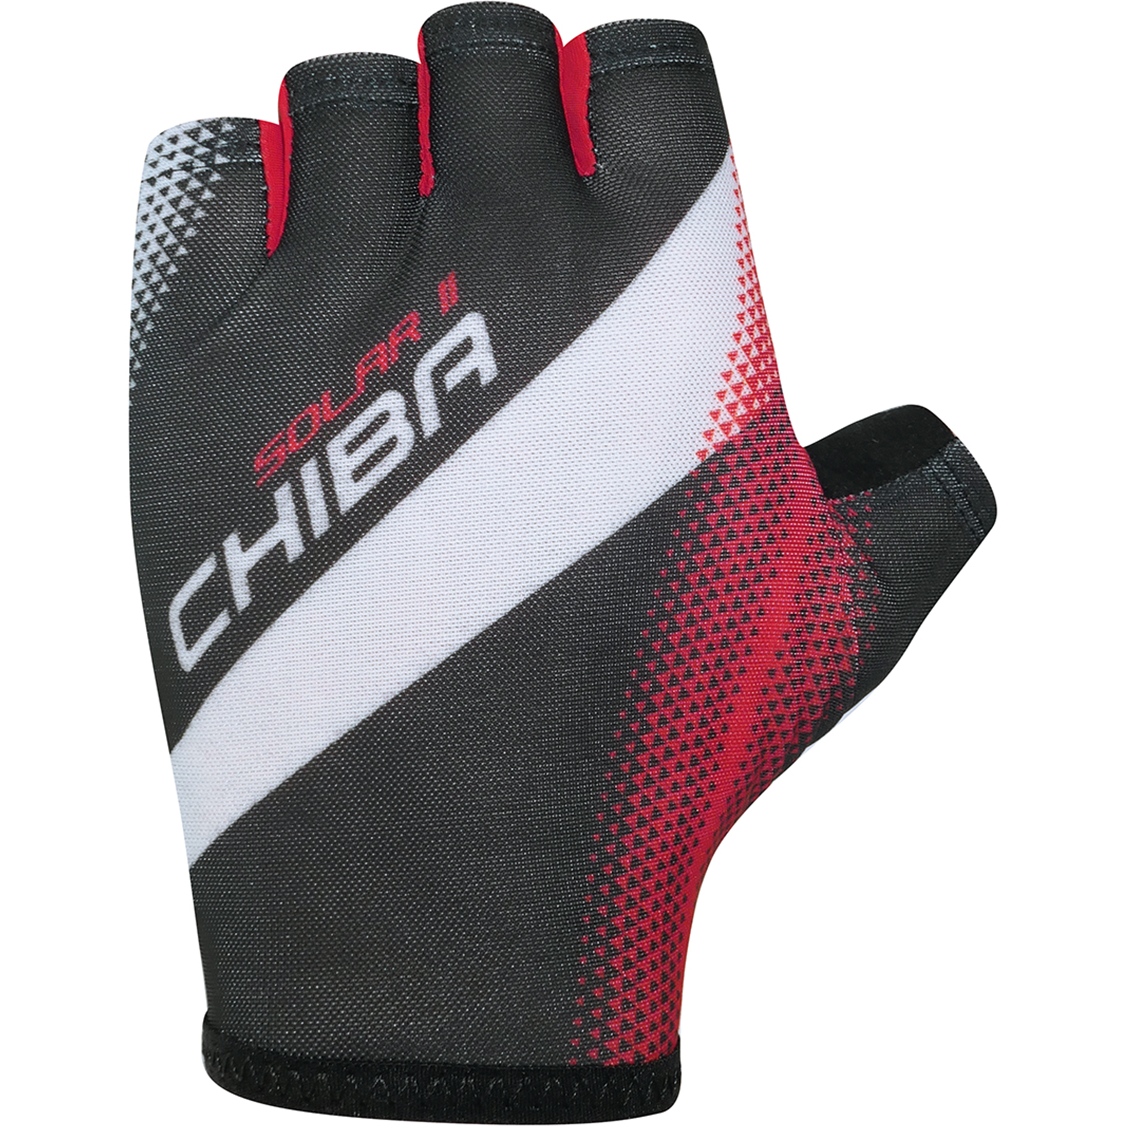 Produktbild von Chiba Solar II Kurzfinger-Handschuhe - schwarz/rot